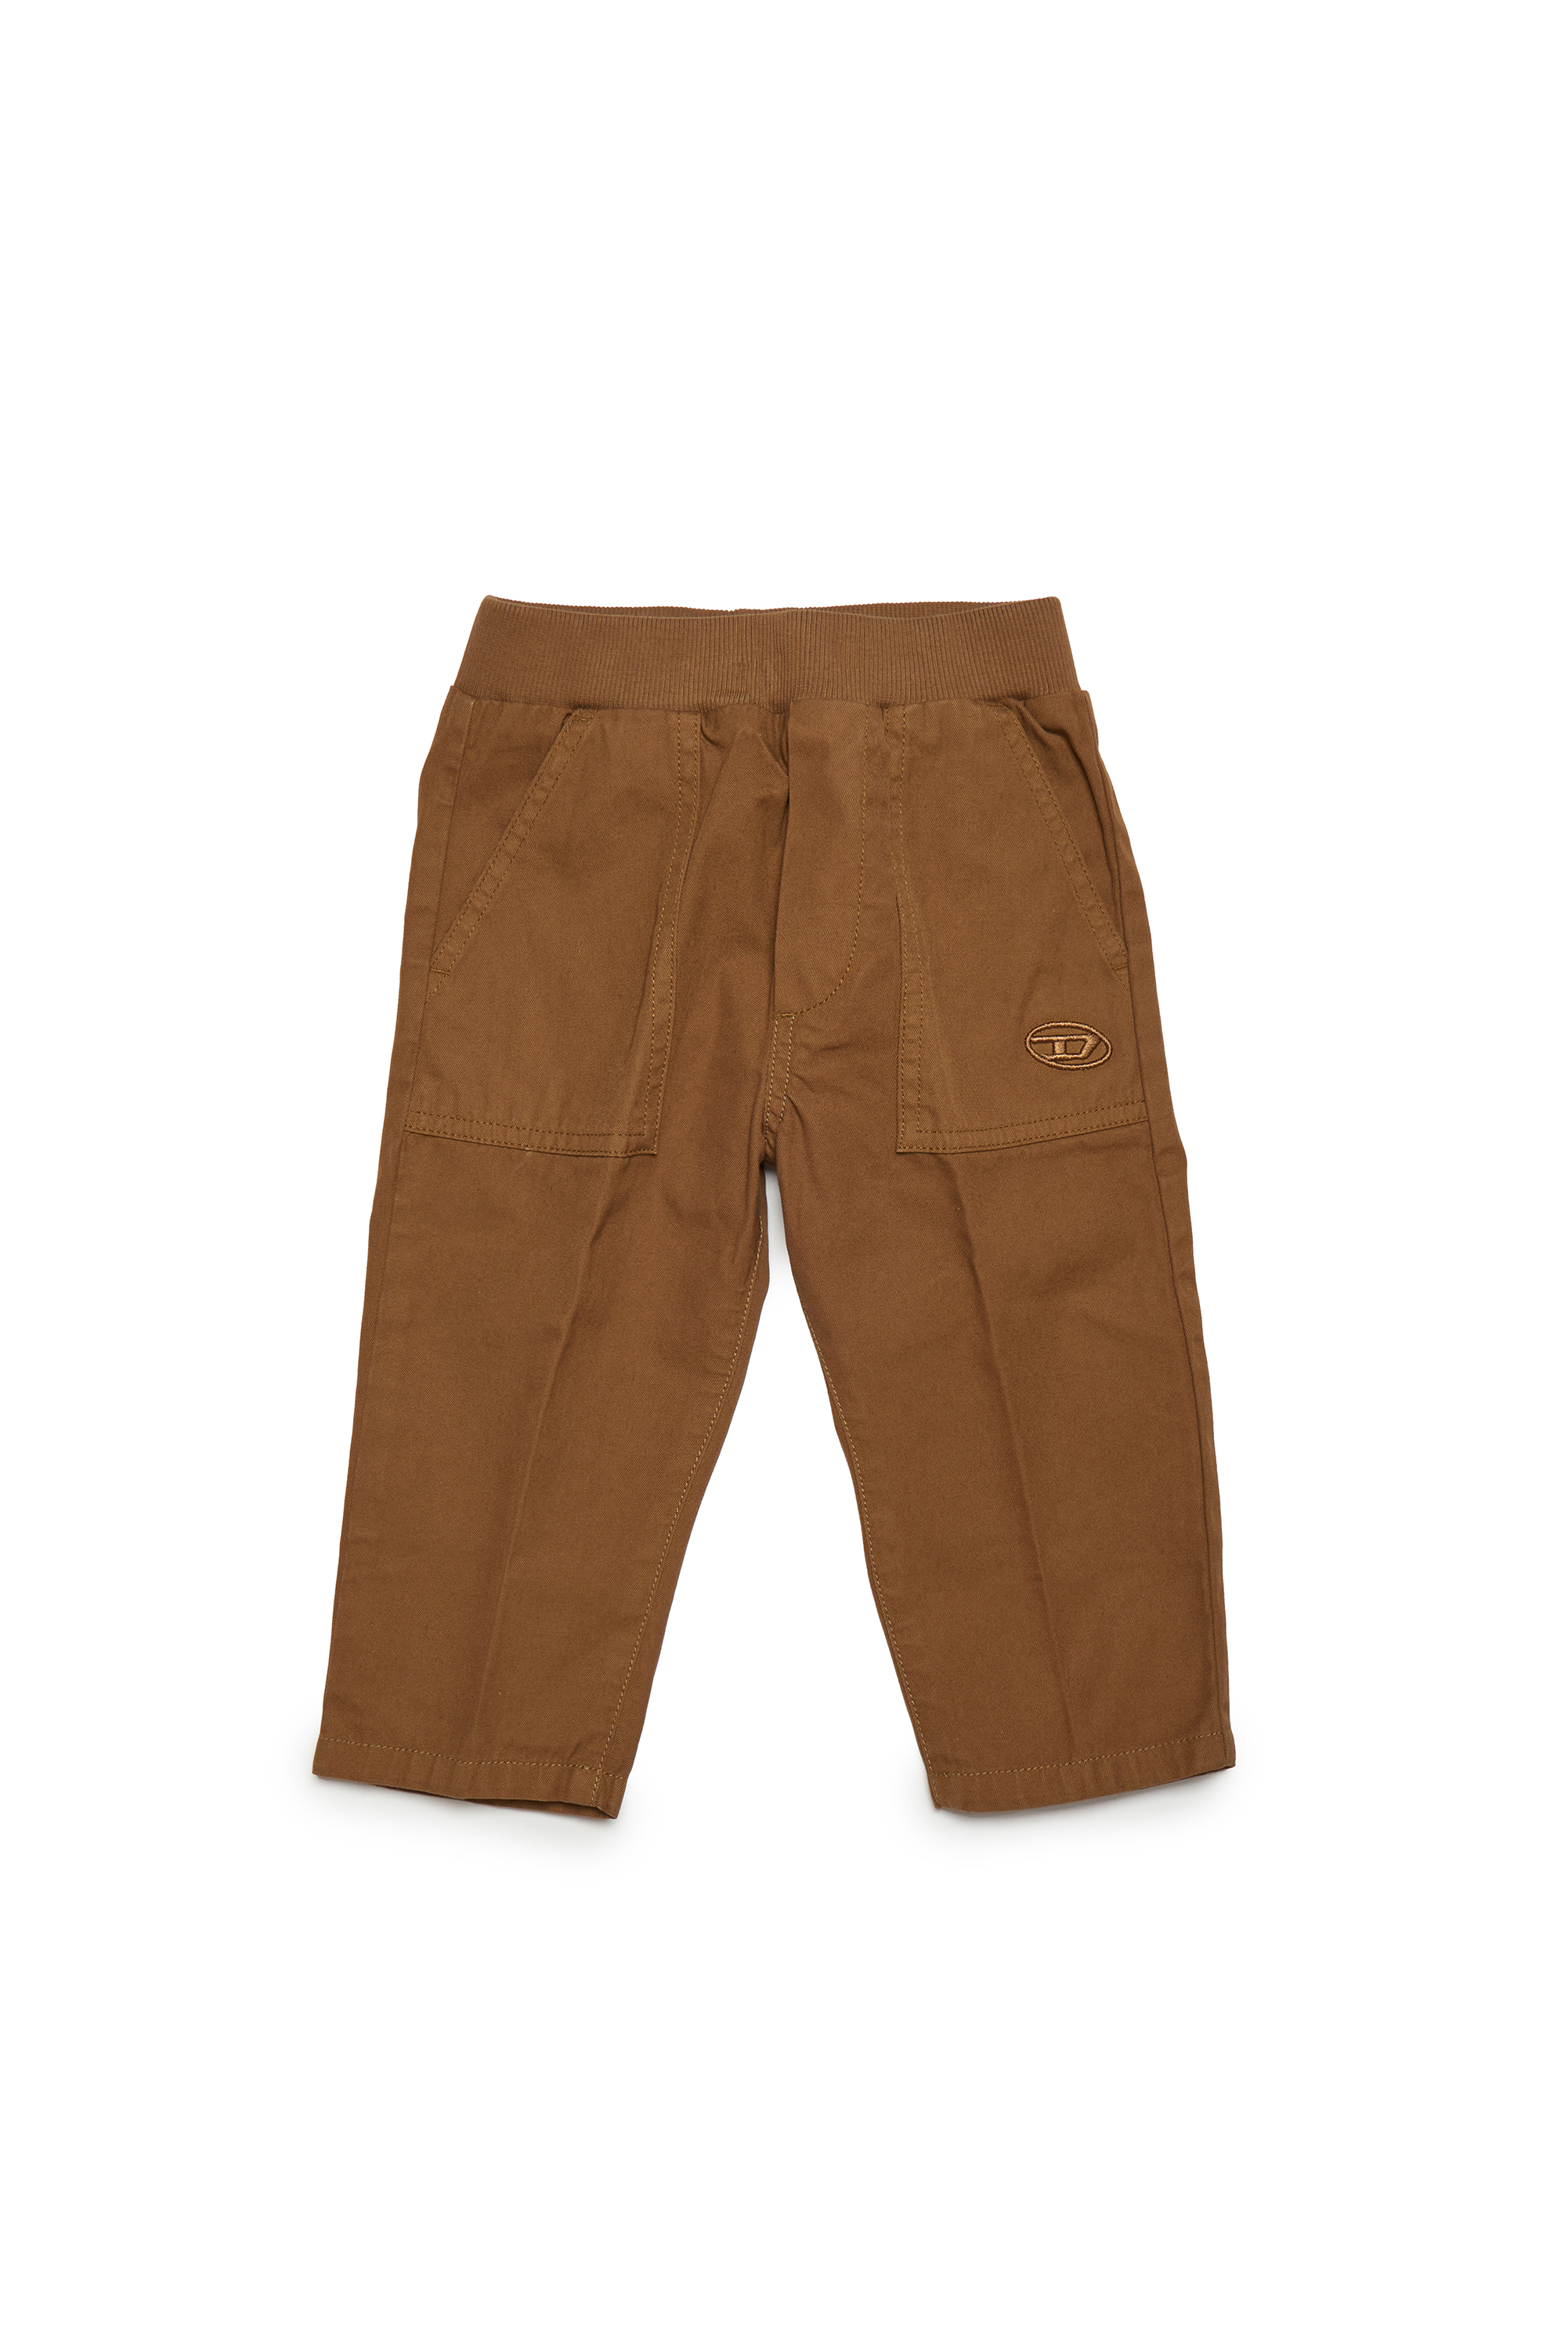 Diesel - Pantalones de algodón con bolsillos tipo militar - Pantalones - Hombre - Marrón